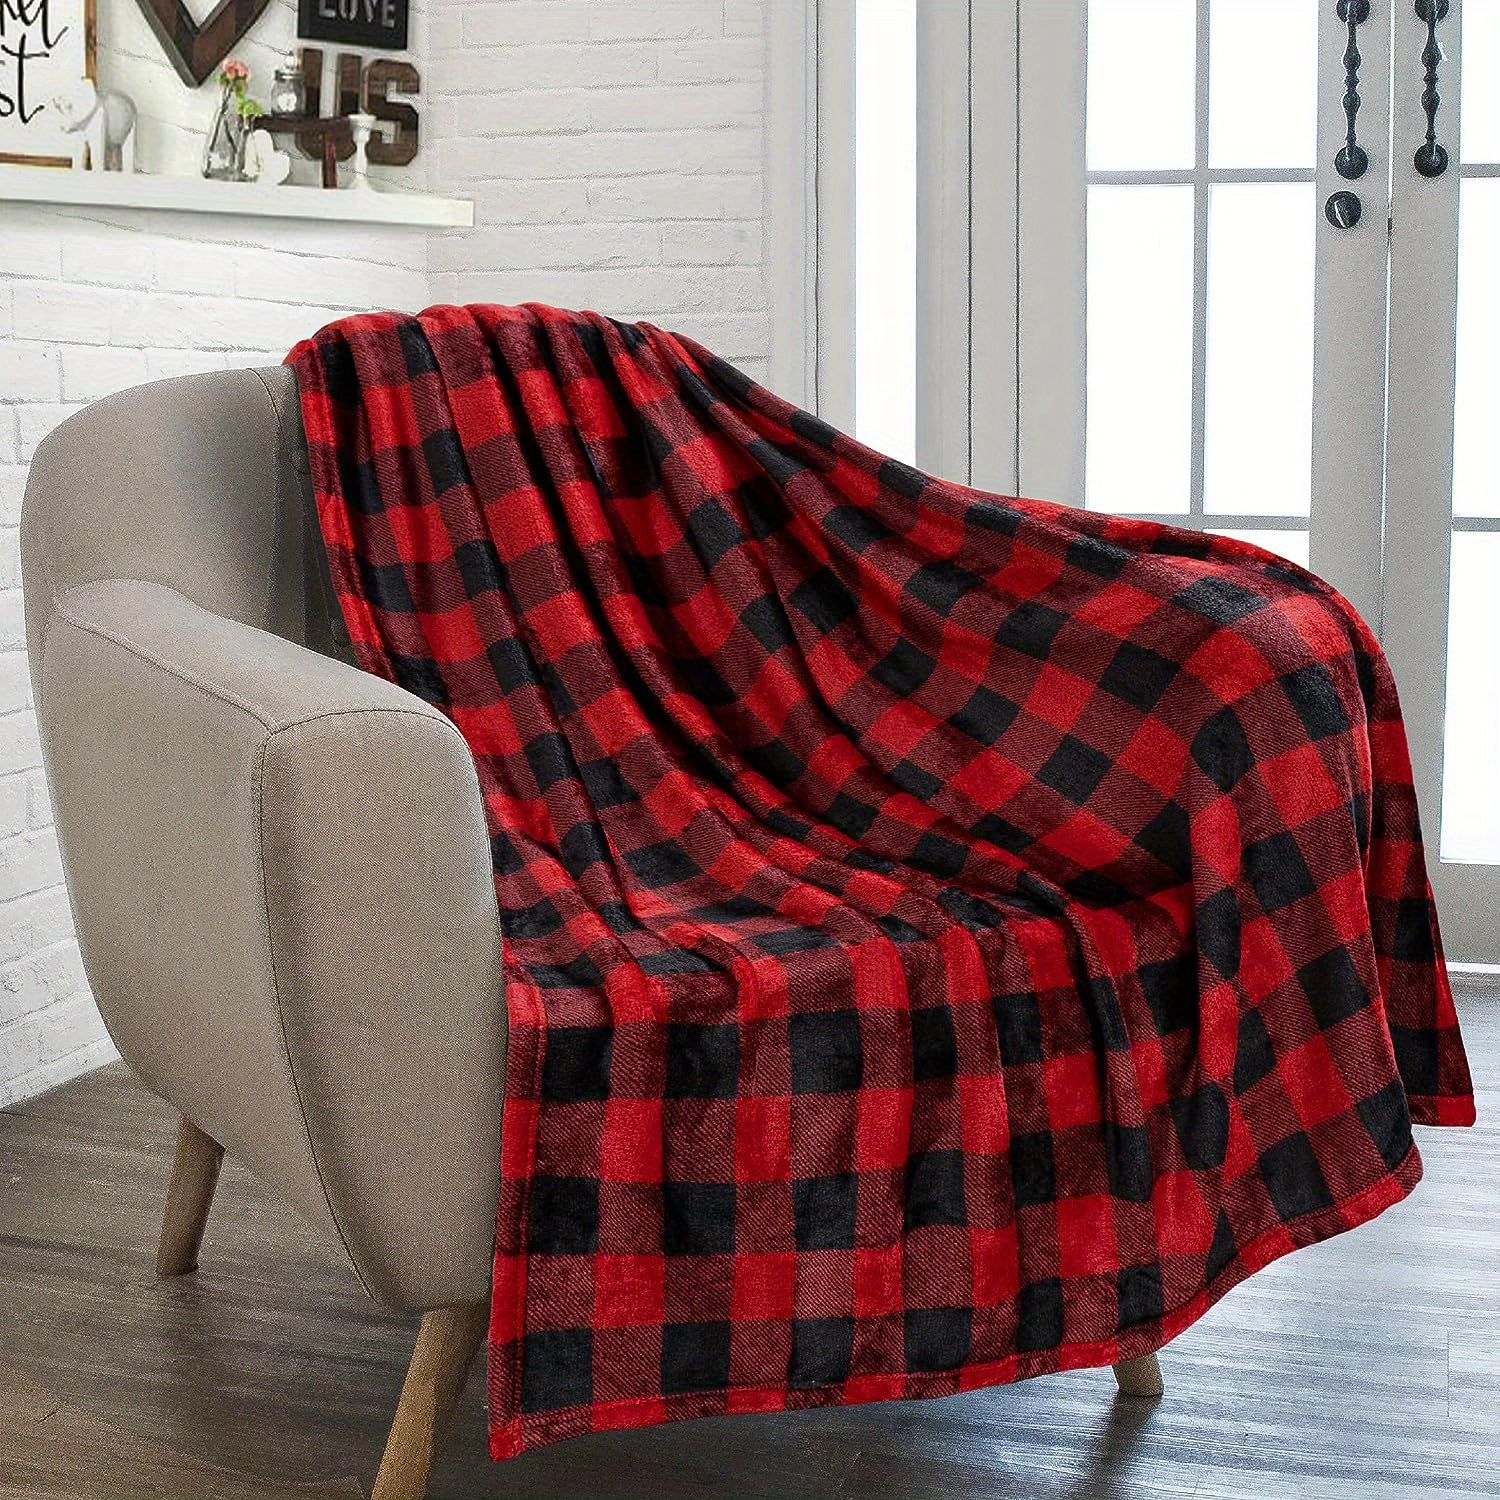  Ultra Soft Checkered Blanket Cozy Buffalo Check Throw